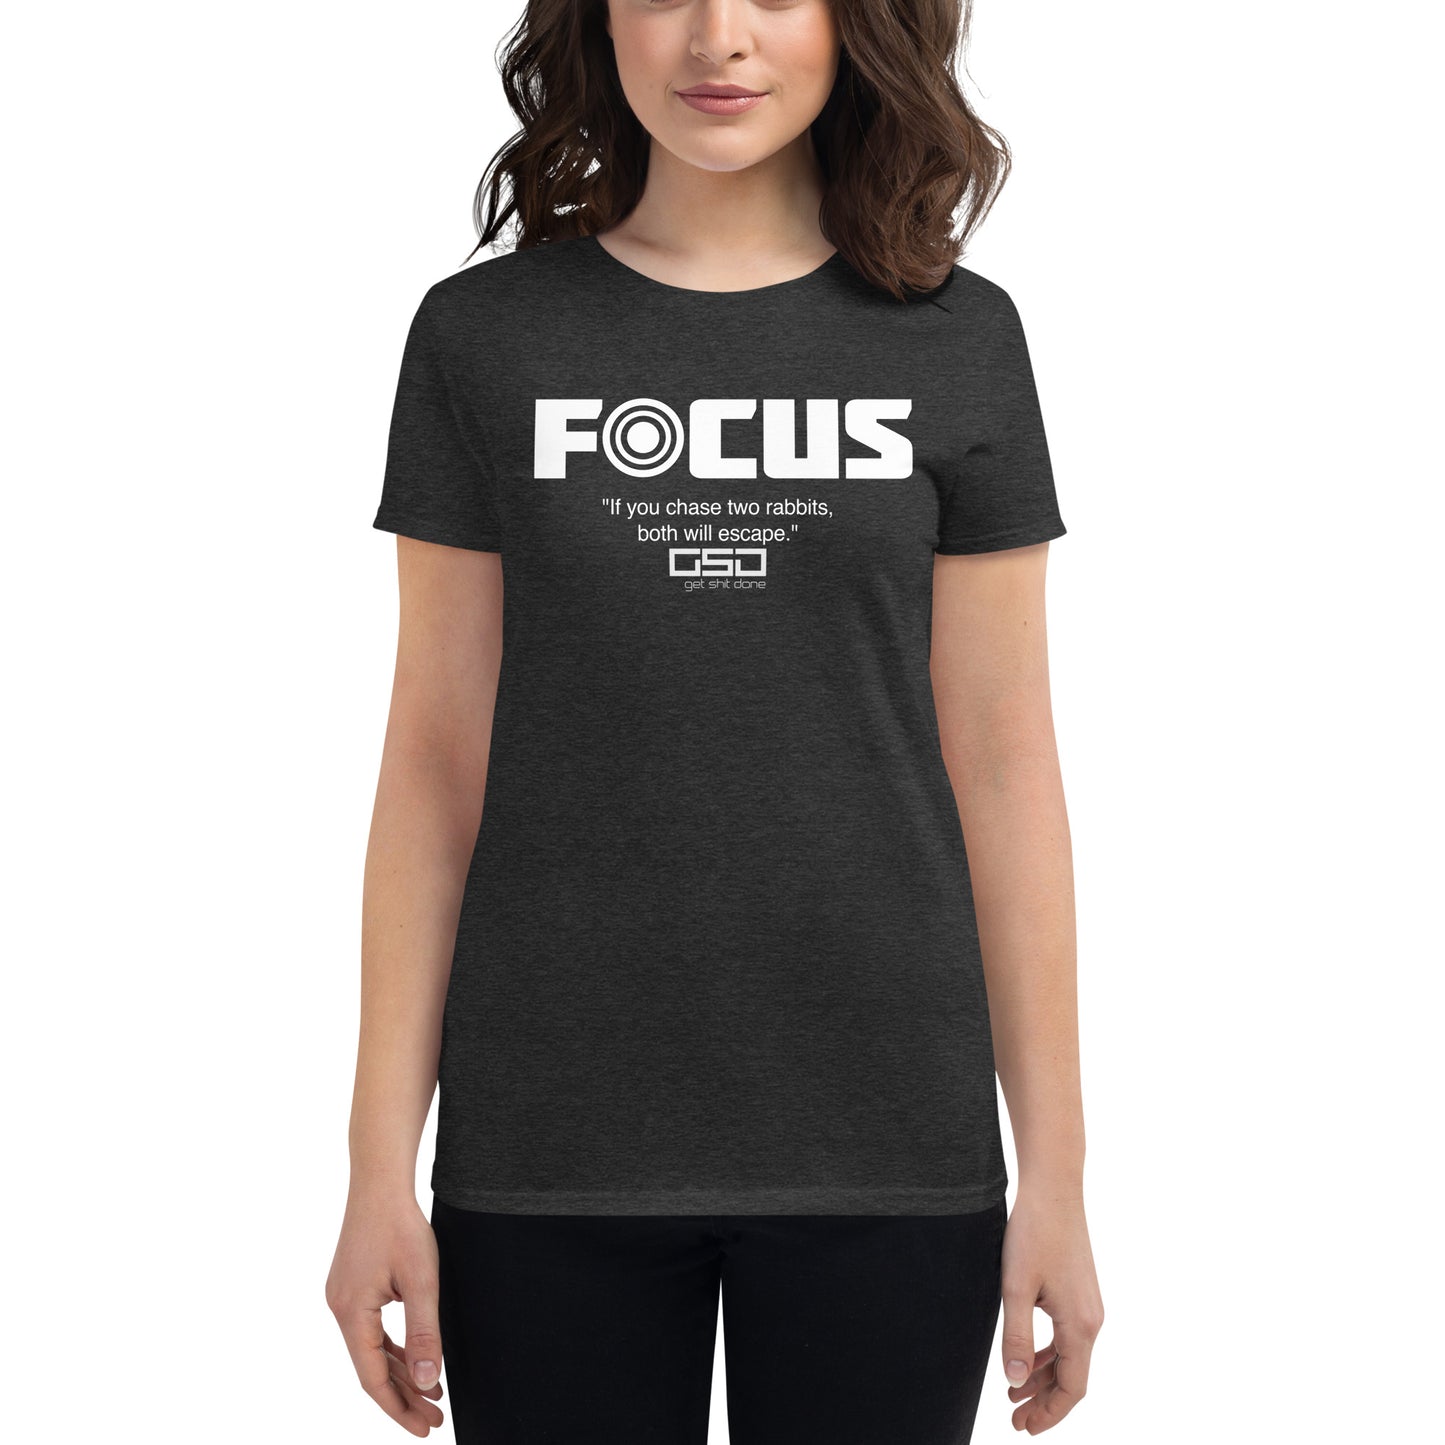 Focus-Women's short sleeve t-shirt